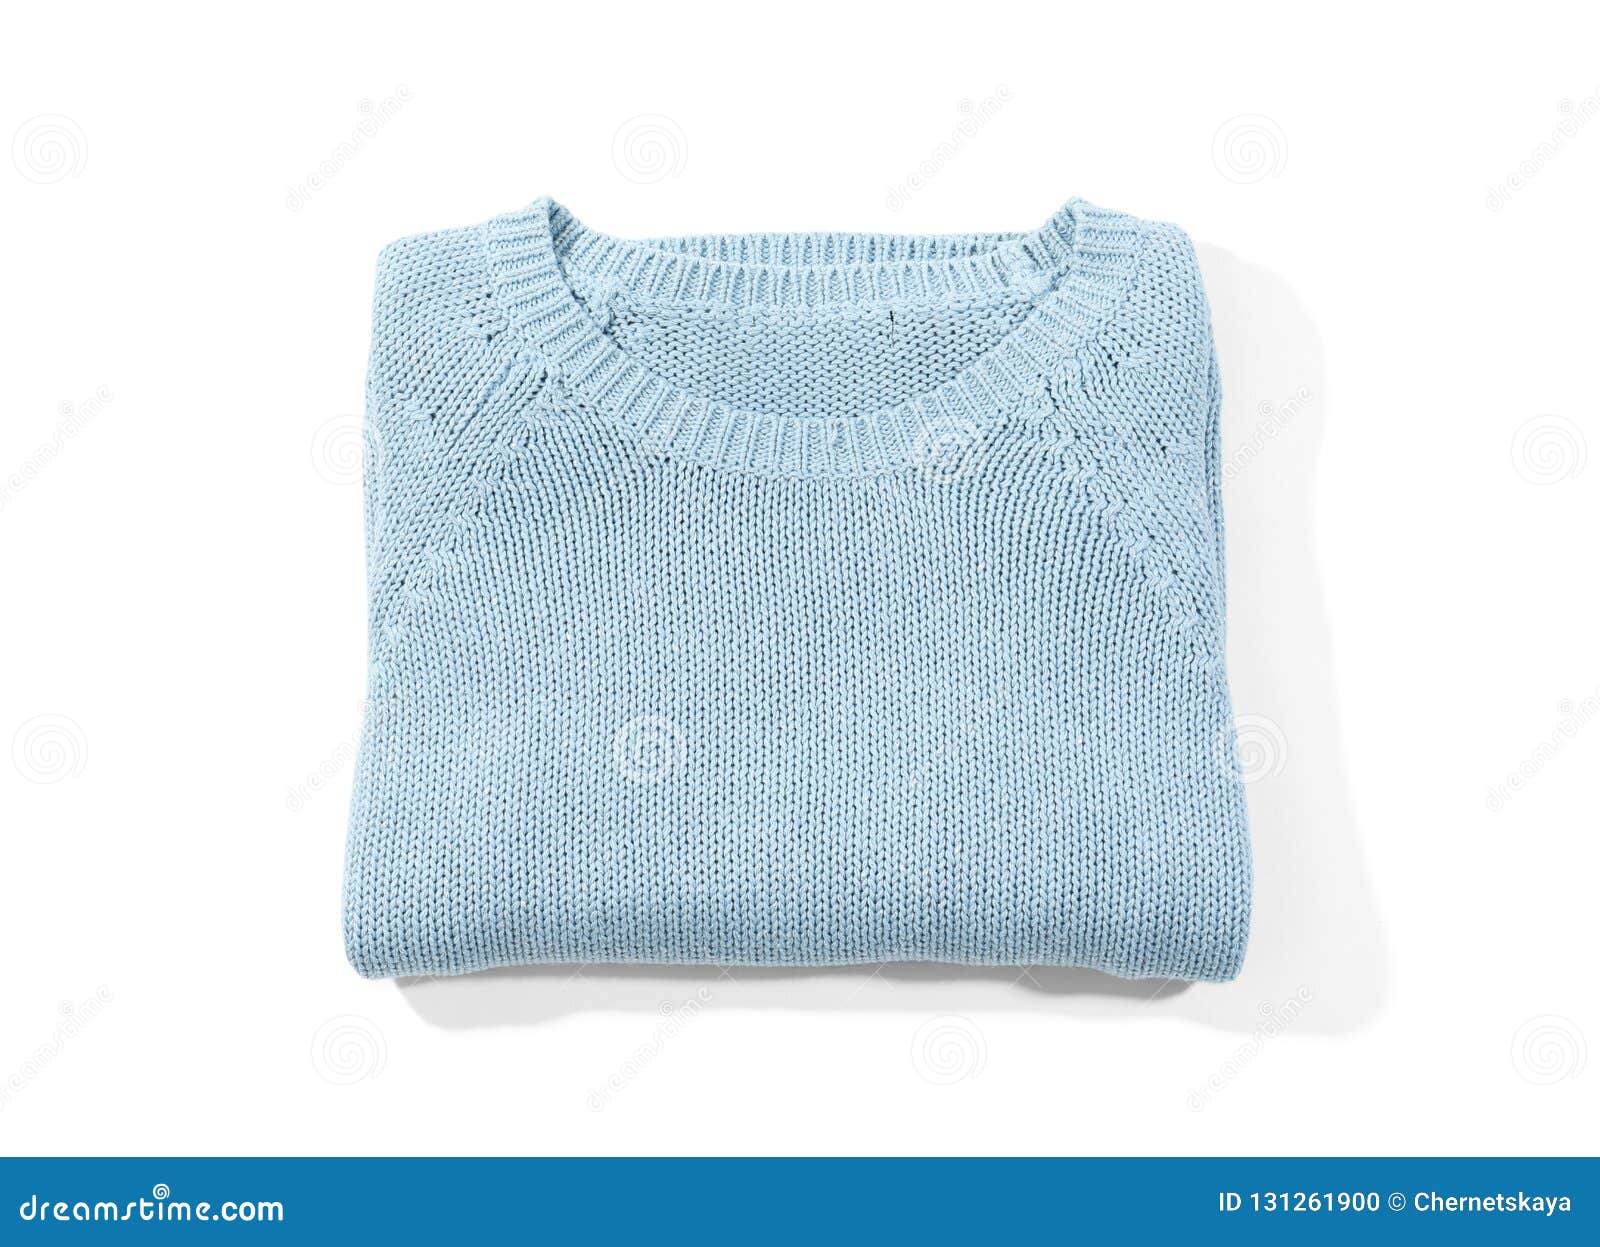 Folded Cozy Warm Sweater on White Background Stock Photo - Image of ...